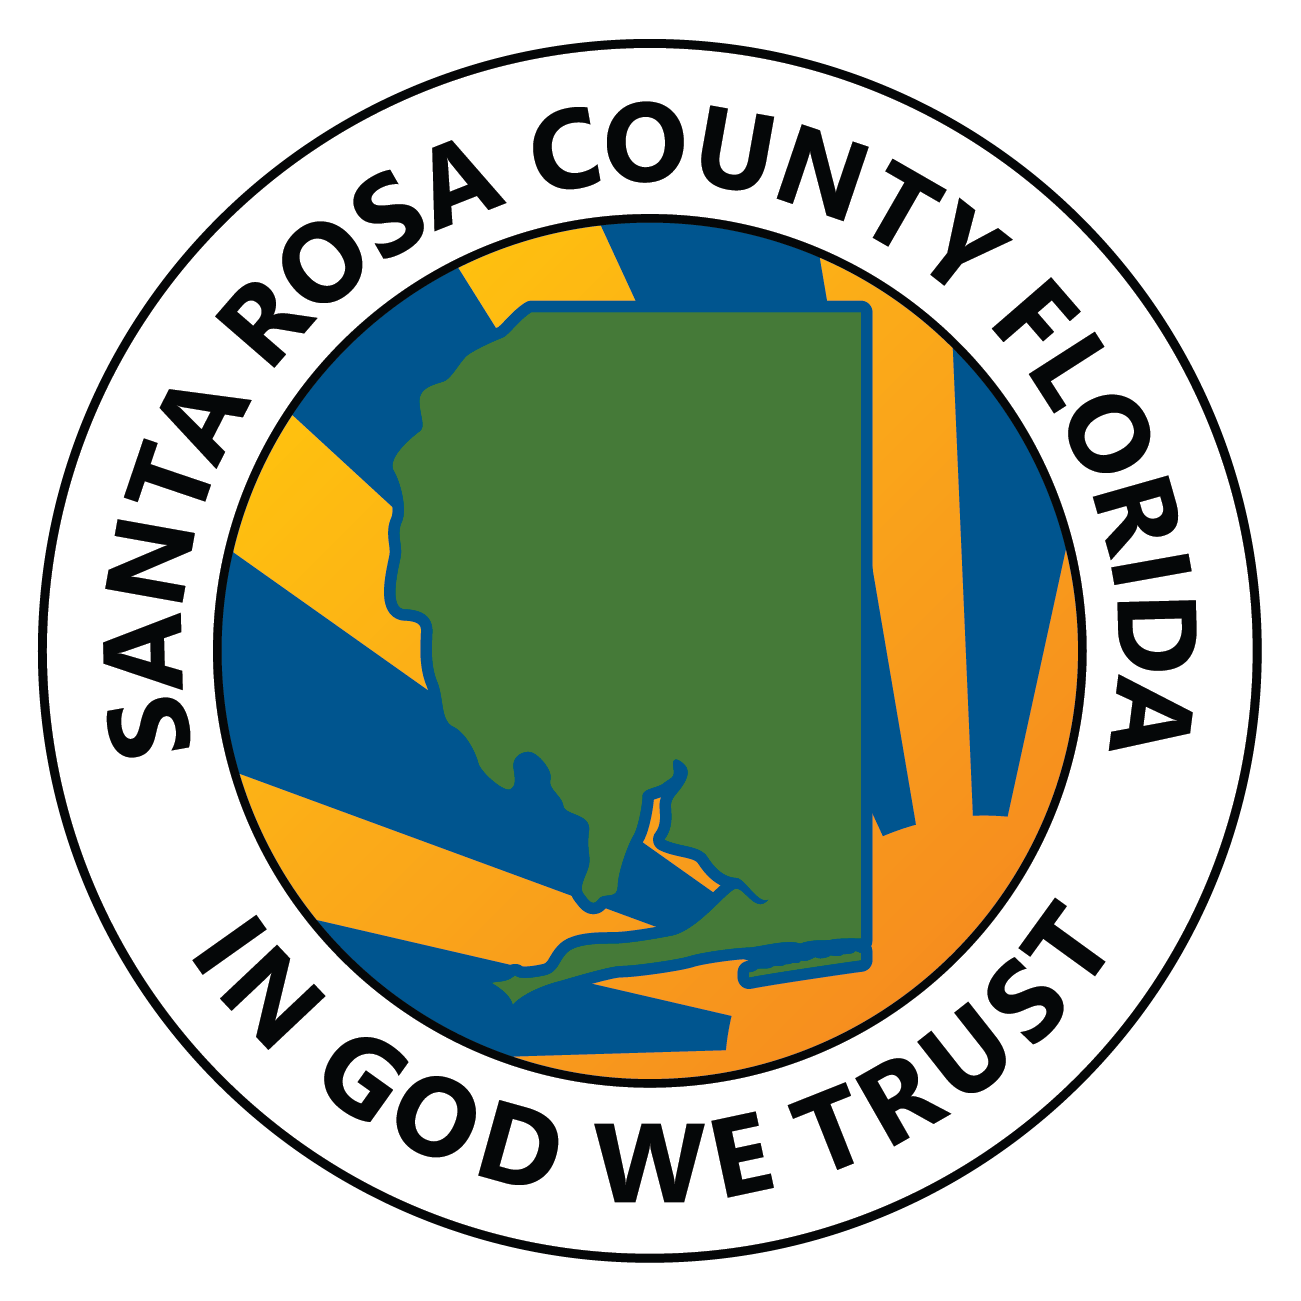 02/07/24 - Santa Rosa County Update